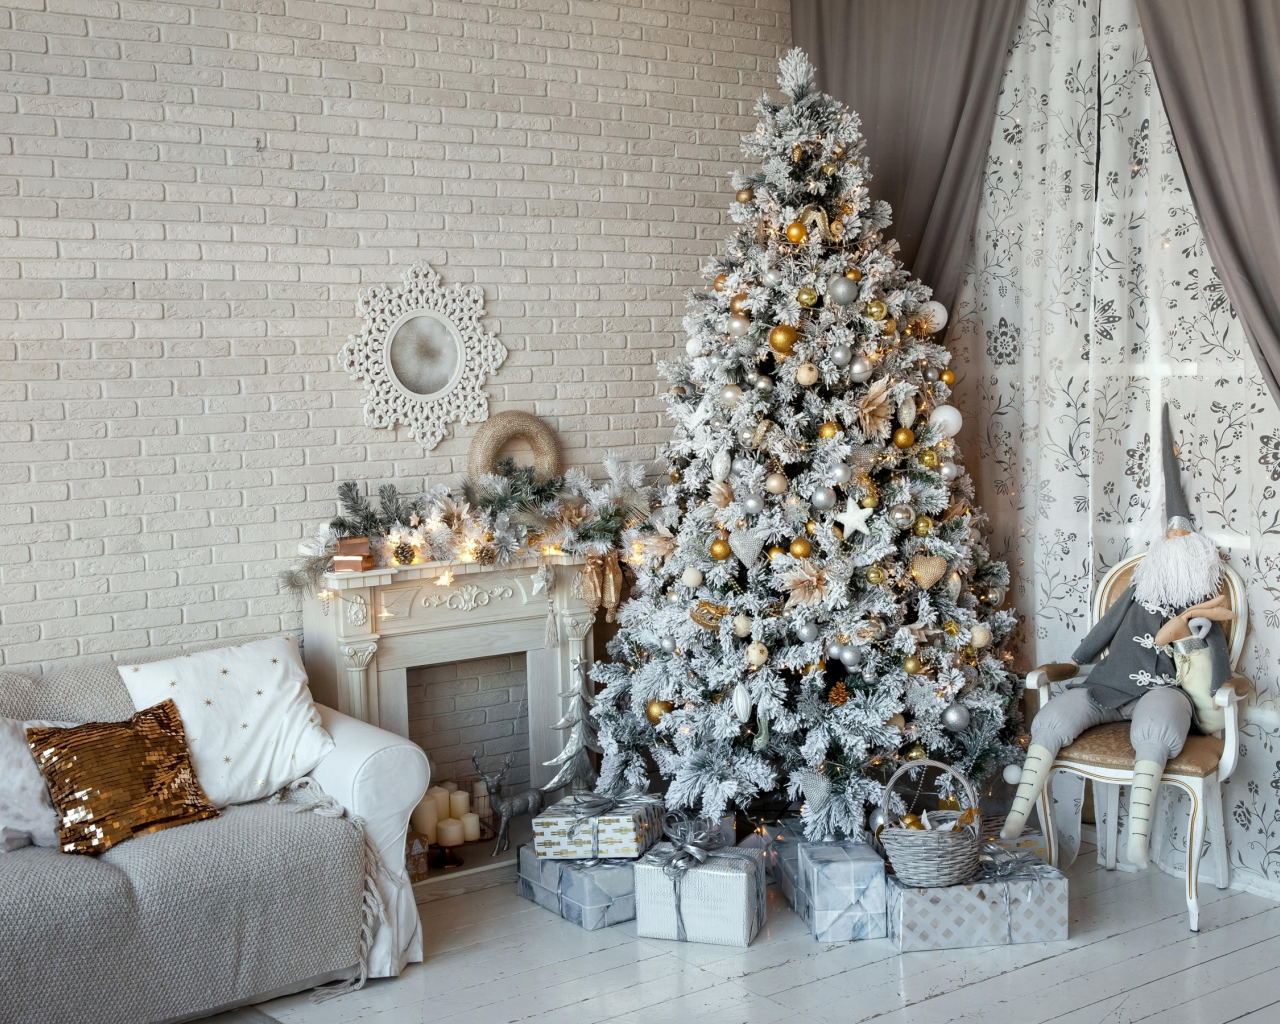 камин, рождество, новый год, елка, шторы, гном, игрушки, ёлка, стена, подарки, интерьер, диван